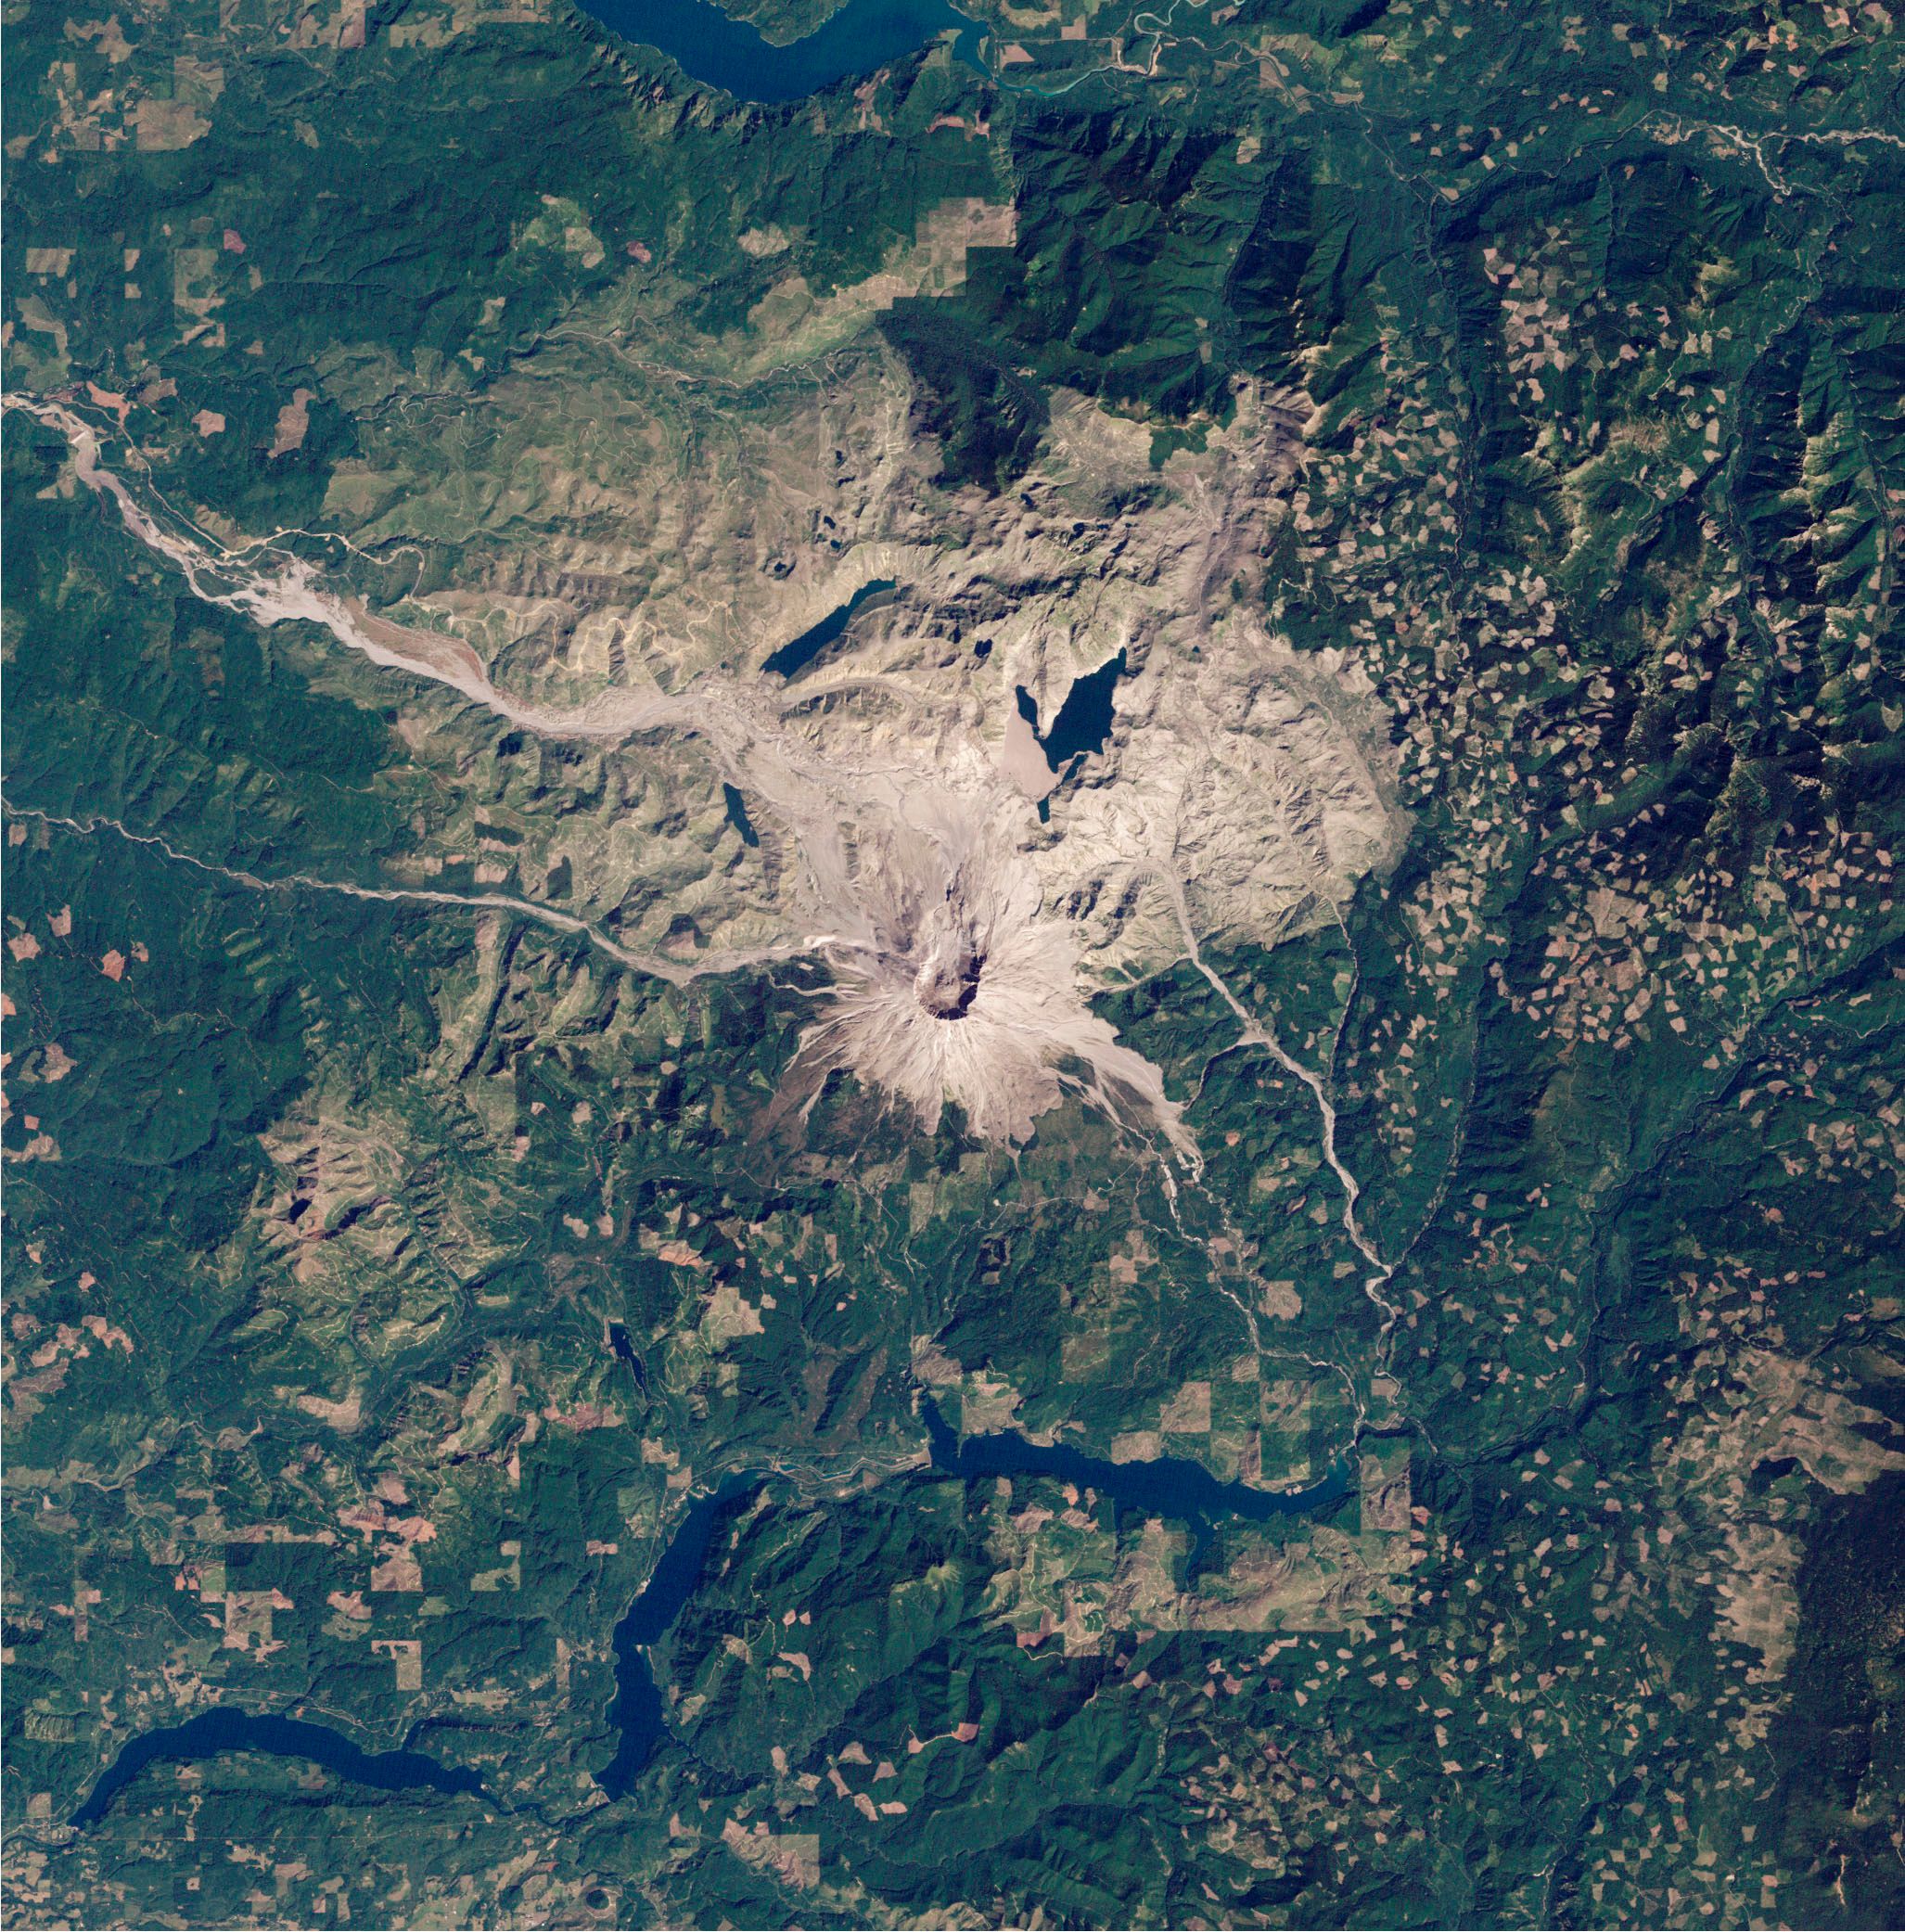 Rund um die grau-braune Vulkanlandschaft des Mount St. Helens ist eine grüne Landschaft zu sehen, oben und unten im Bild sind Stauseen sichtbar.